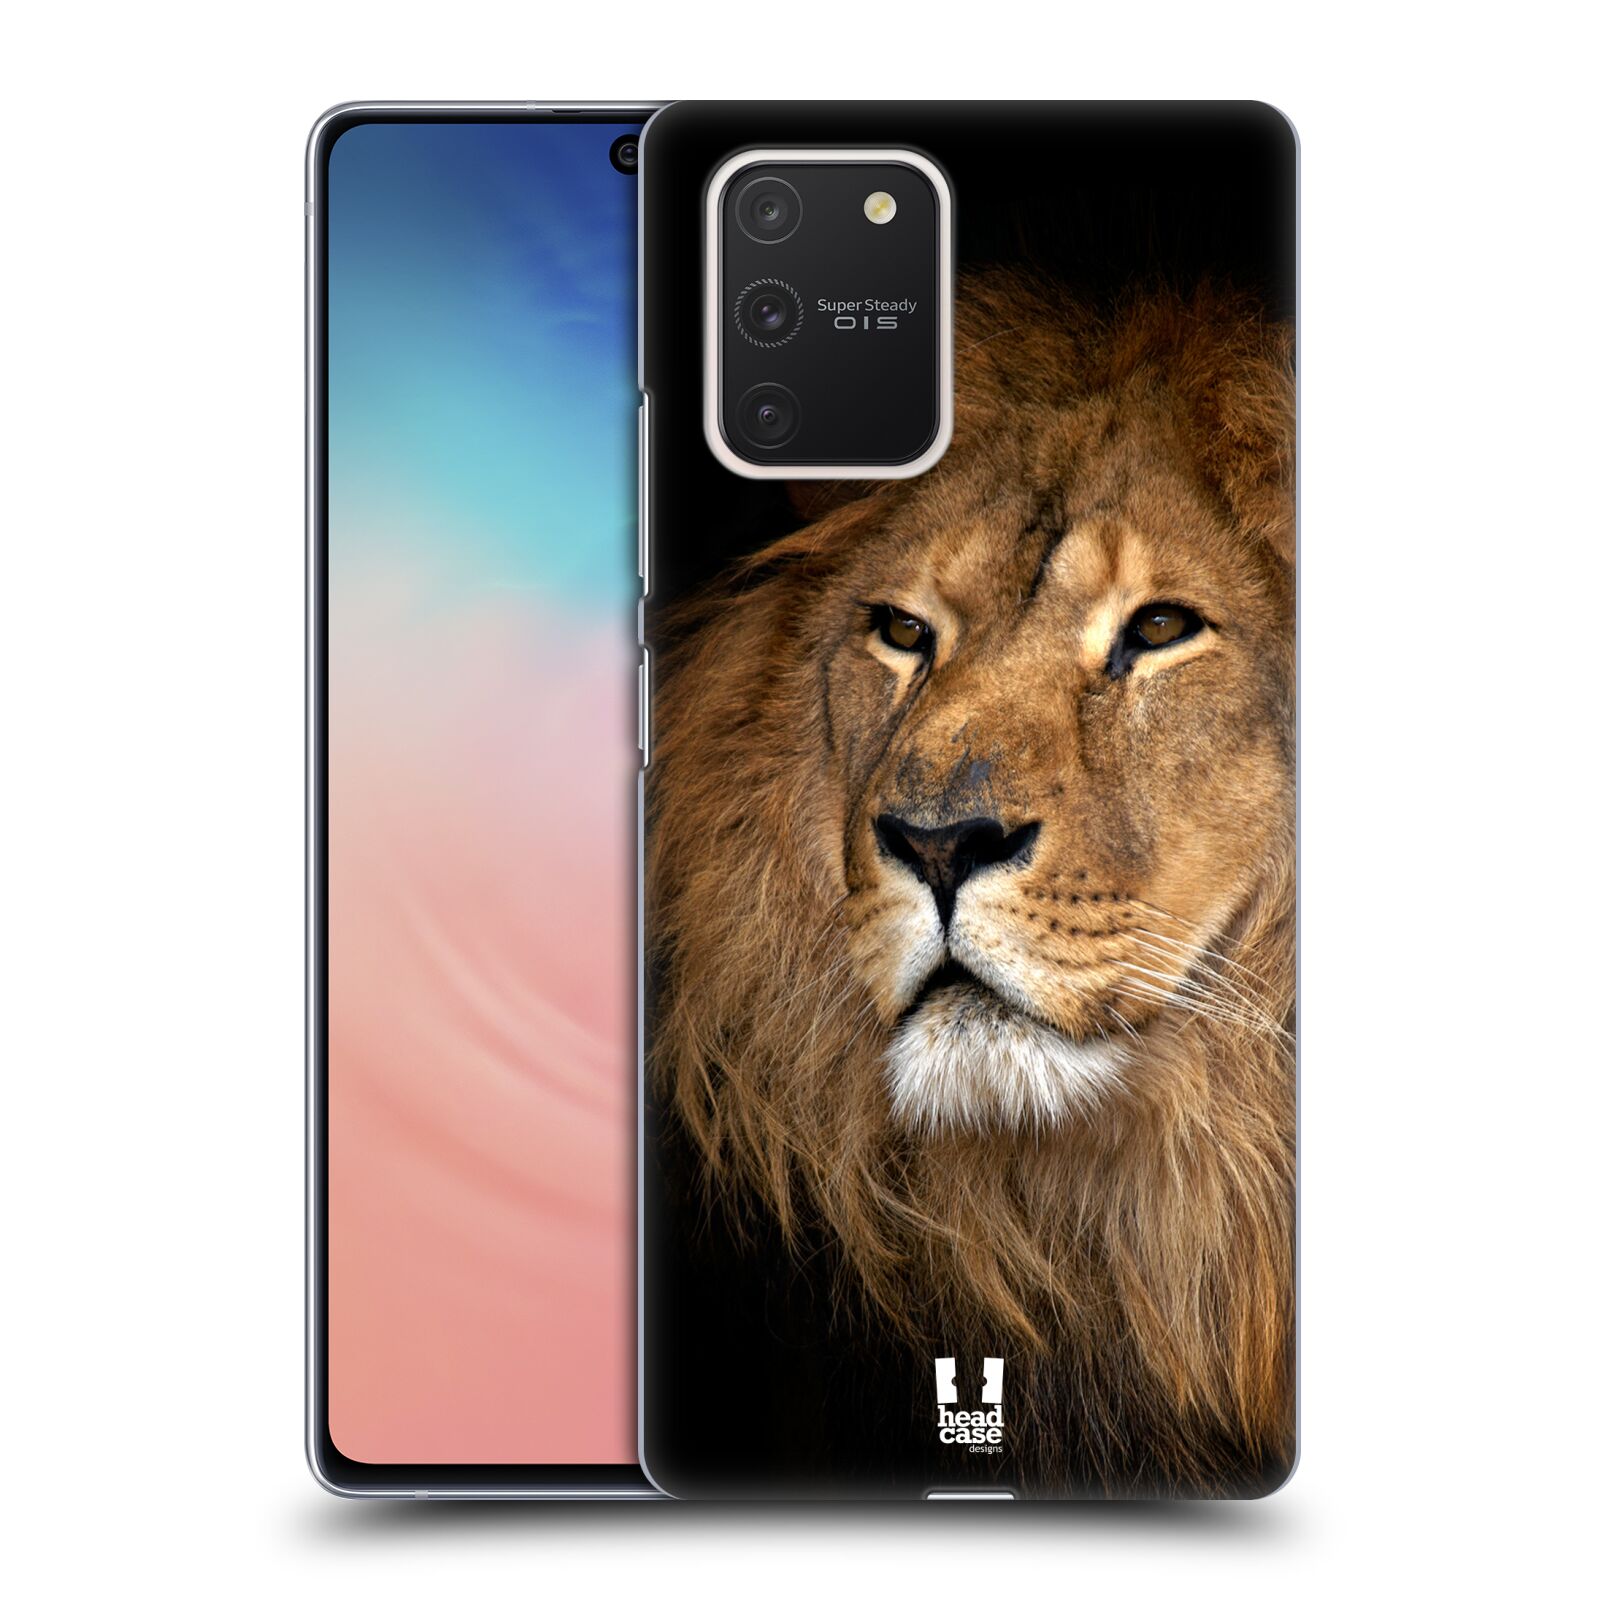 Zadní obal pro mobil Samsung Galaxy S10 LITE - HEAD CASE - Svět zvířat král zvířat Lev